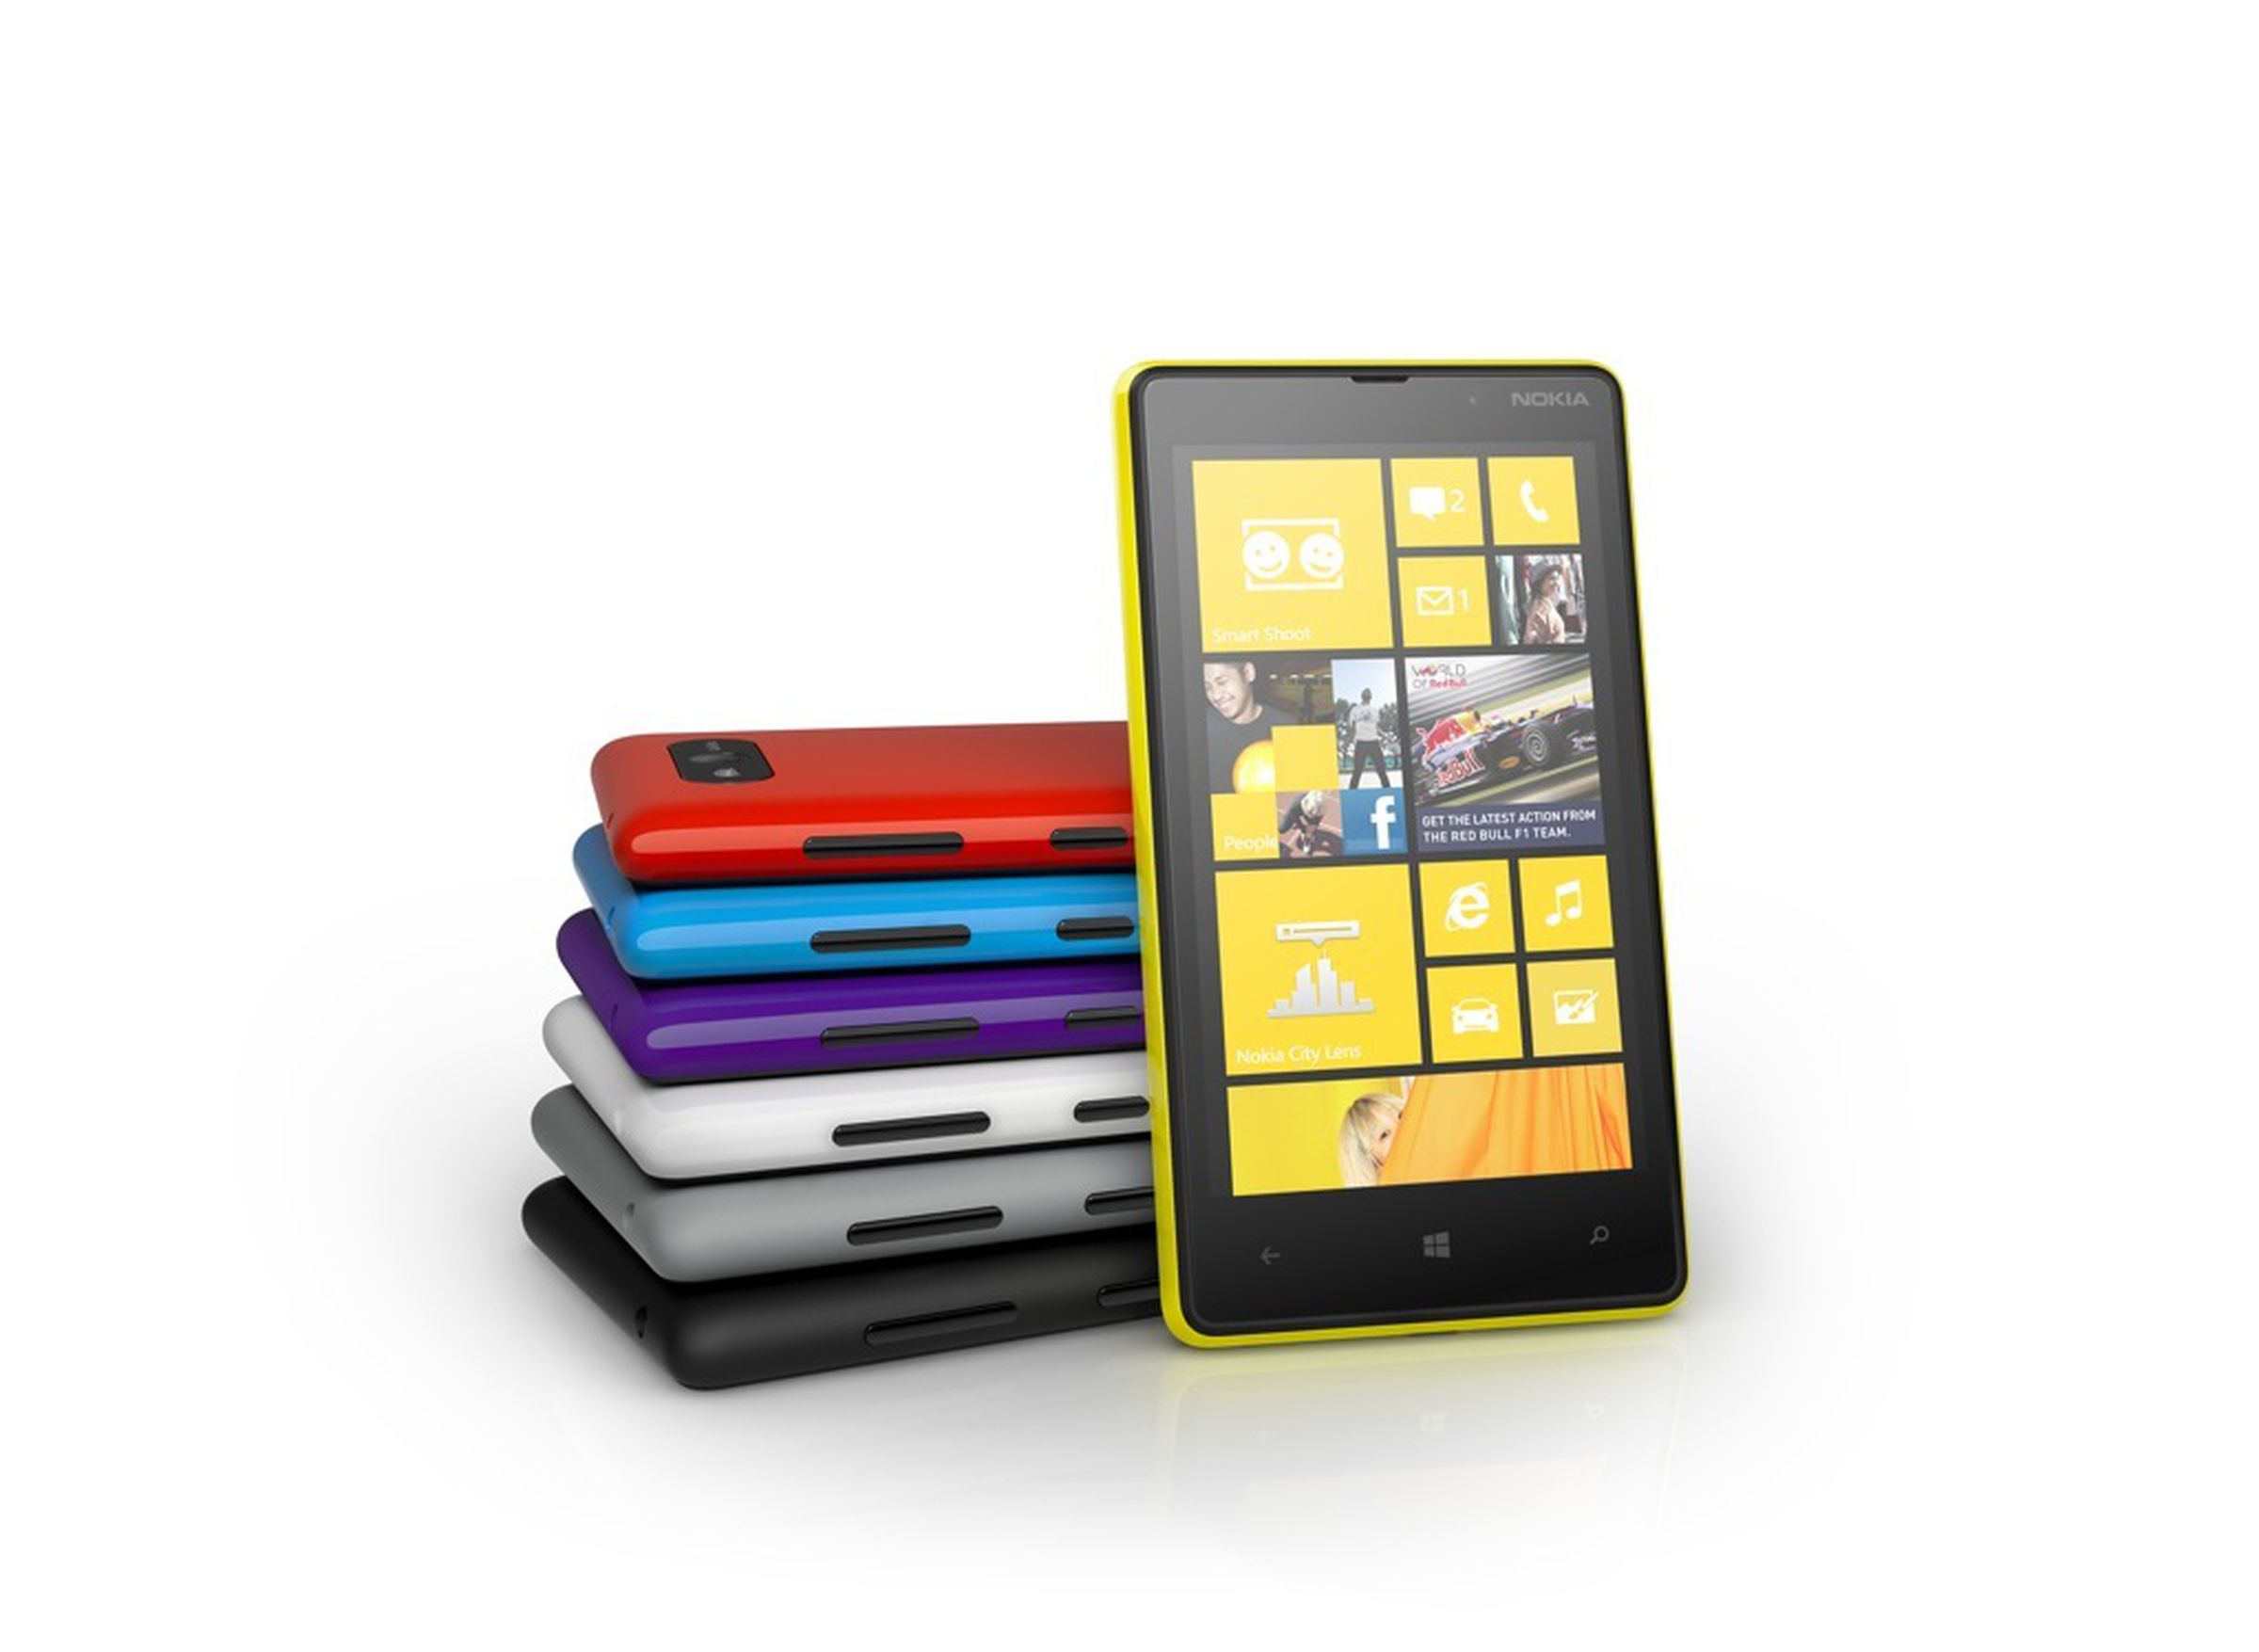 Nokia Lumia 820 press pictures